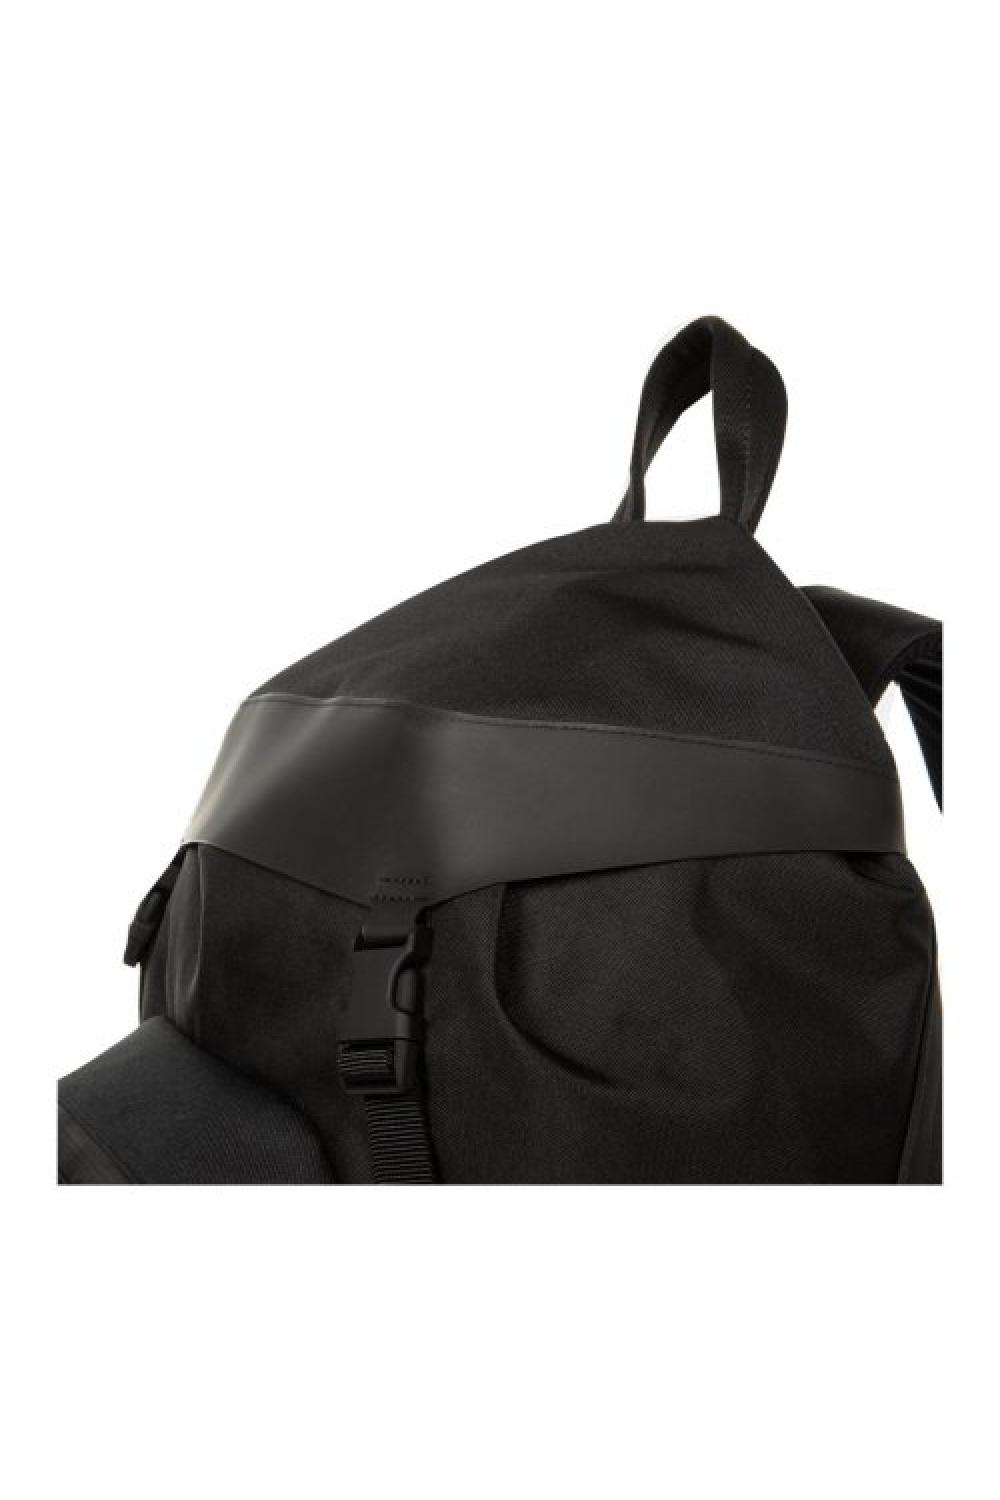 EASTPAK x Neil Barrett Backpack Topload (20 Liter) - Μαύρο (EK0A5BB7-S08)